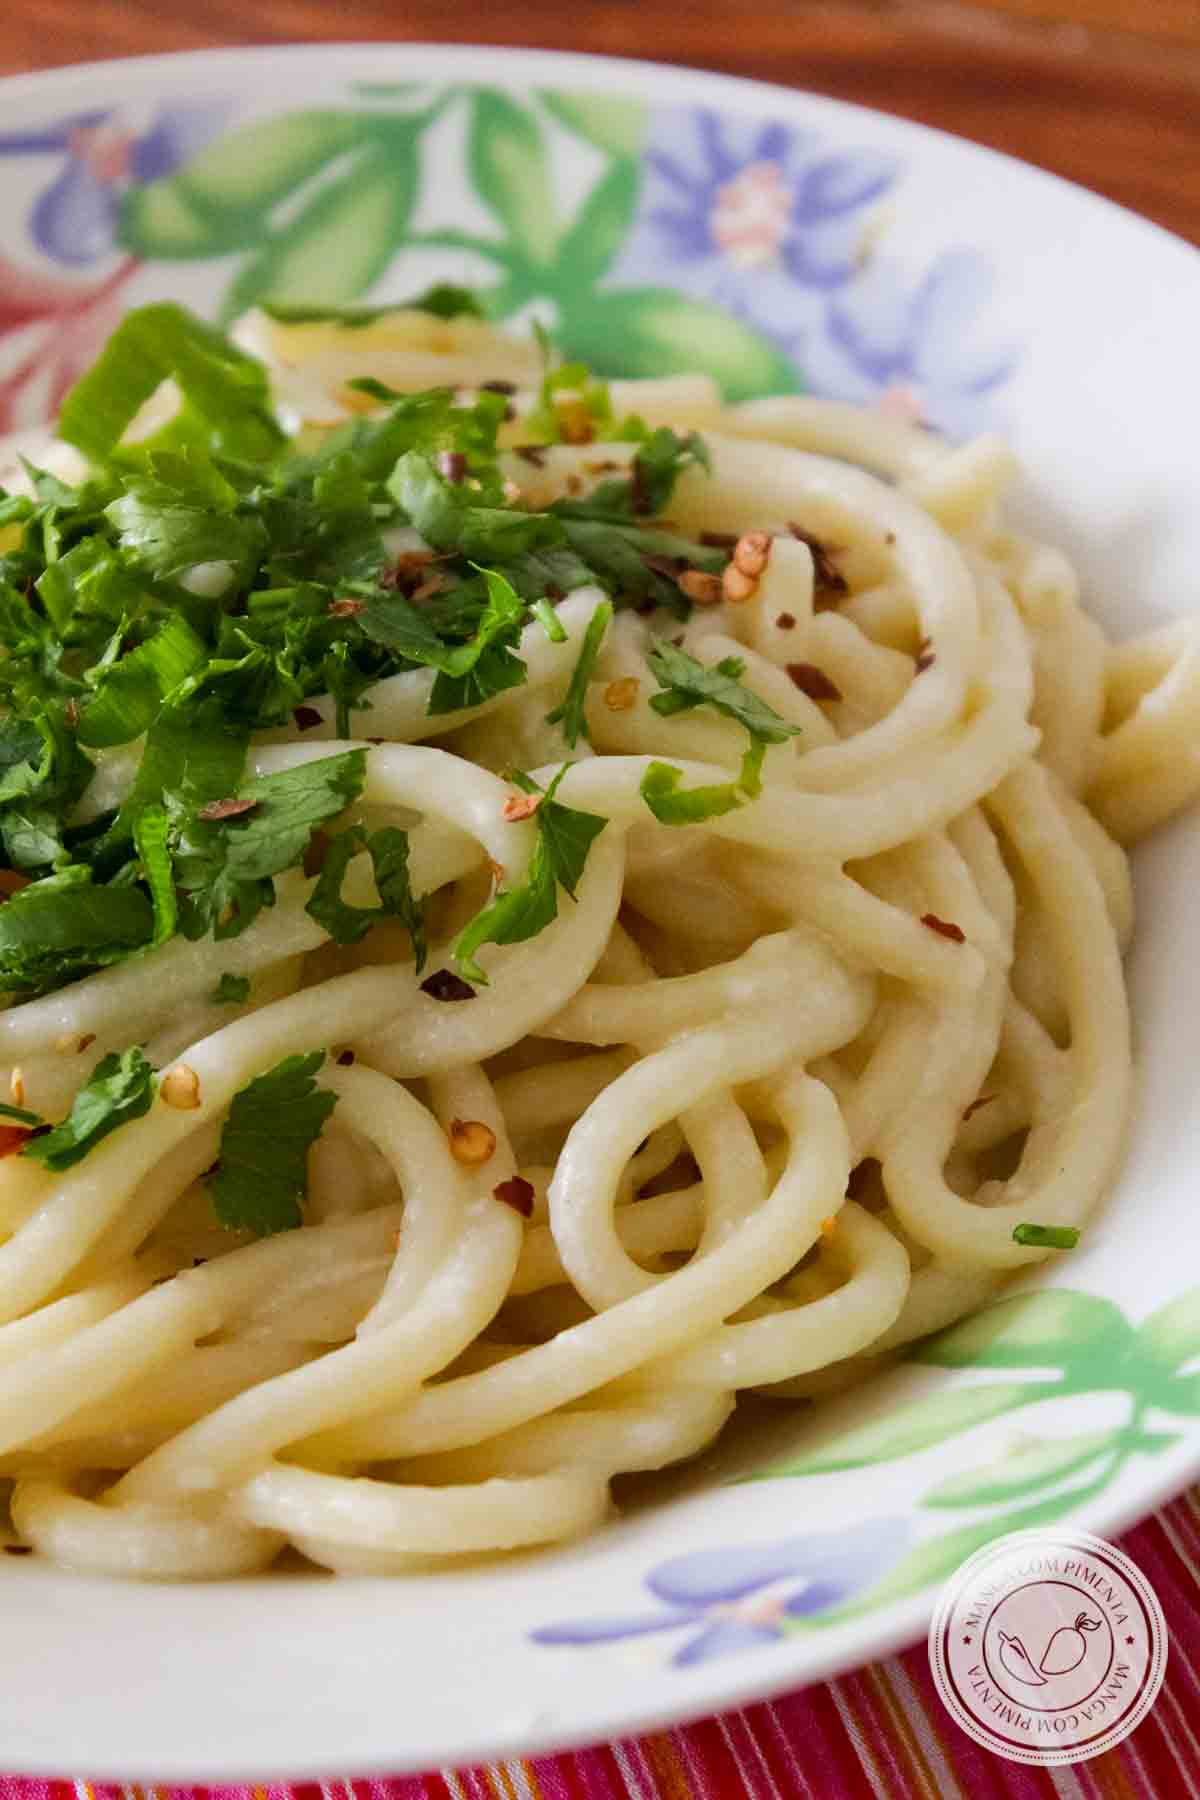 Receita de Espaguete com molho de Queijo Mussarela - prepare um delicioso prato para o almoço ou jantar!